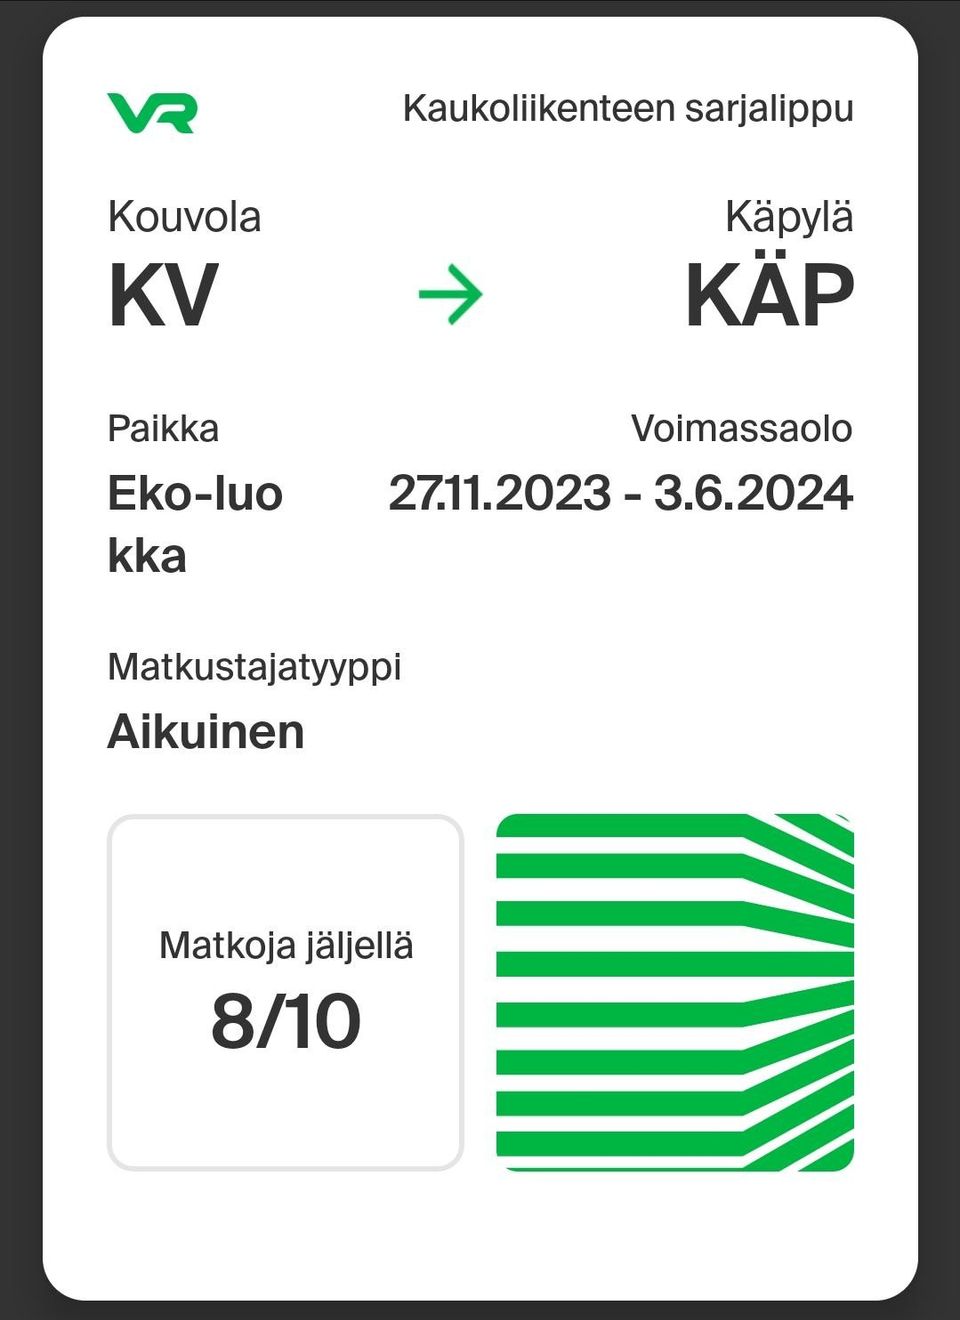 VR sarjalippu Kouvola-Käpylä (Tikkurila/Pasila)